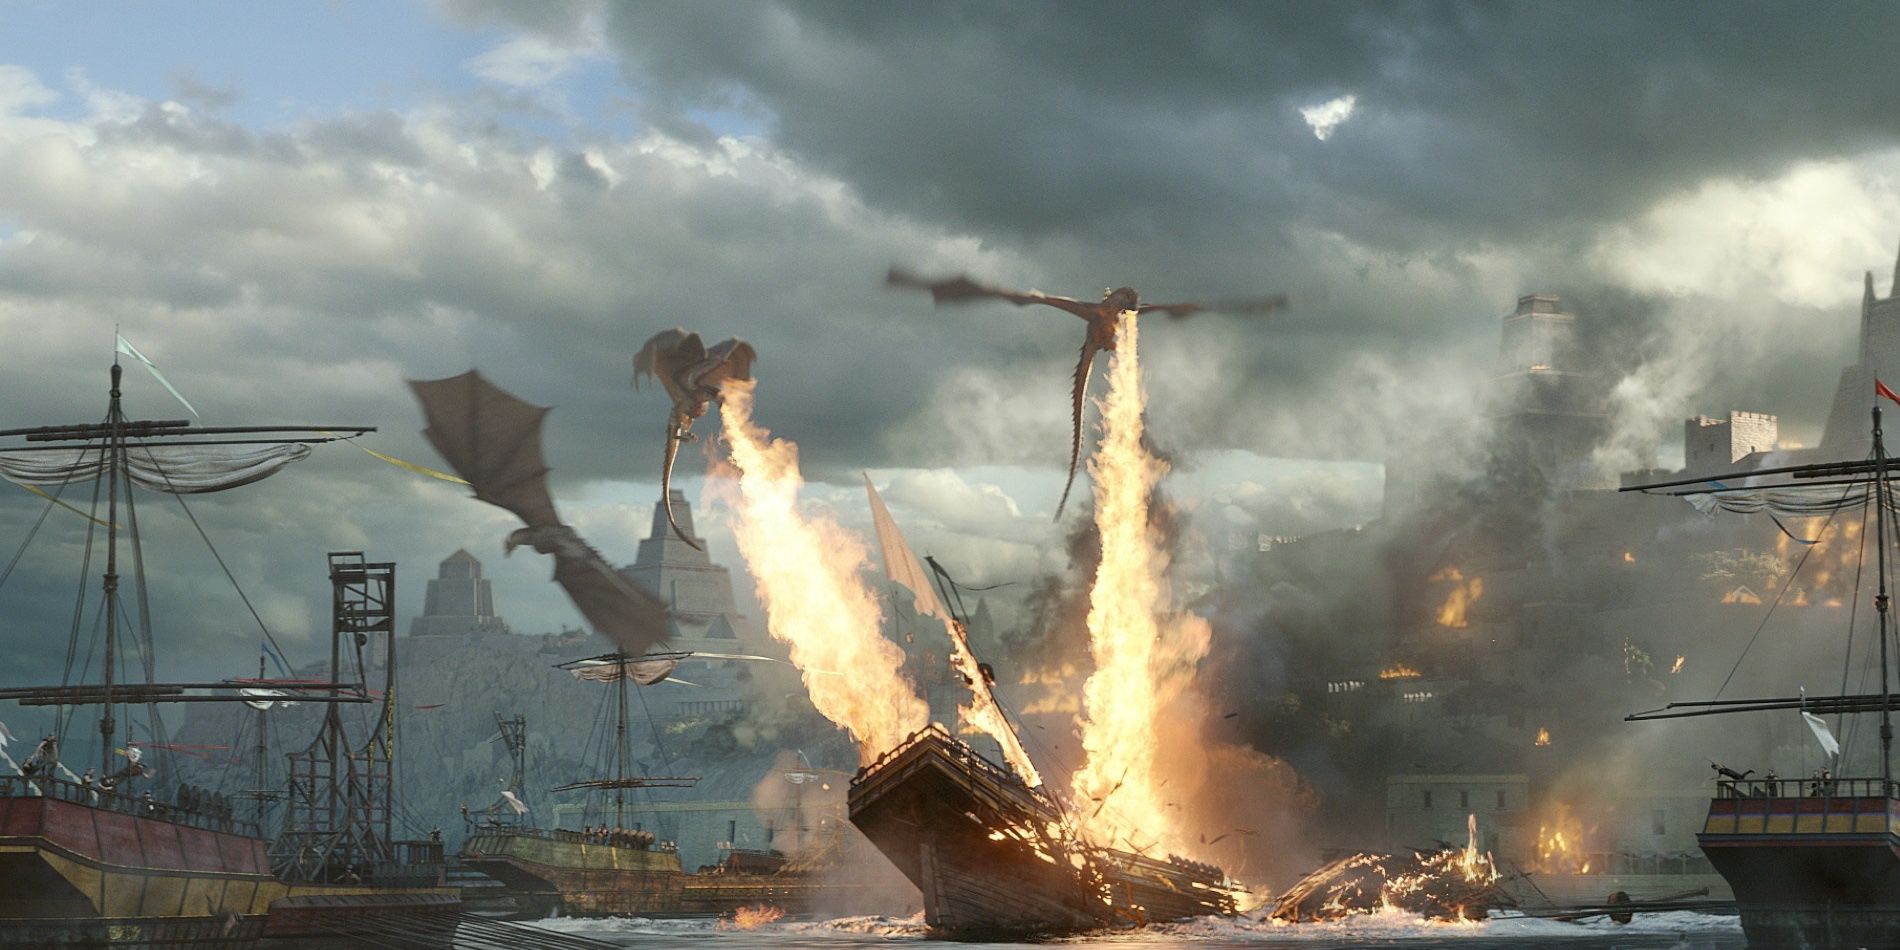 Dragons burning the fleet in Meereen in Game of Thrones 